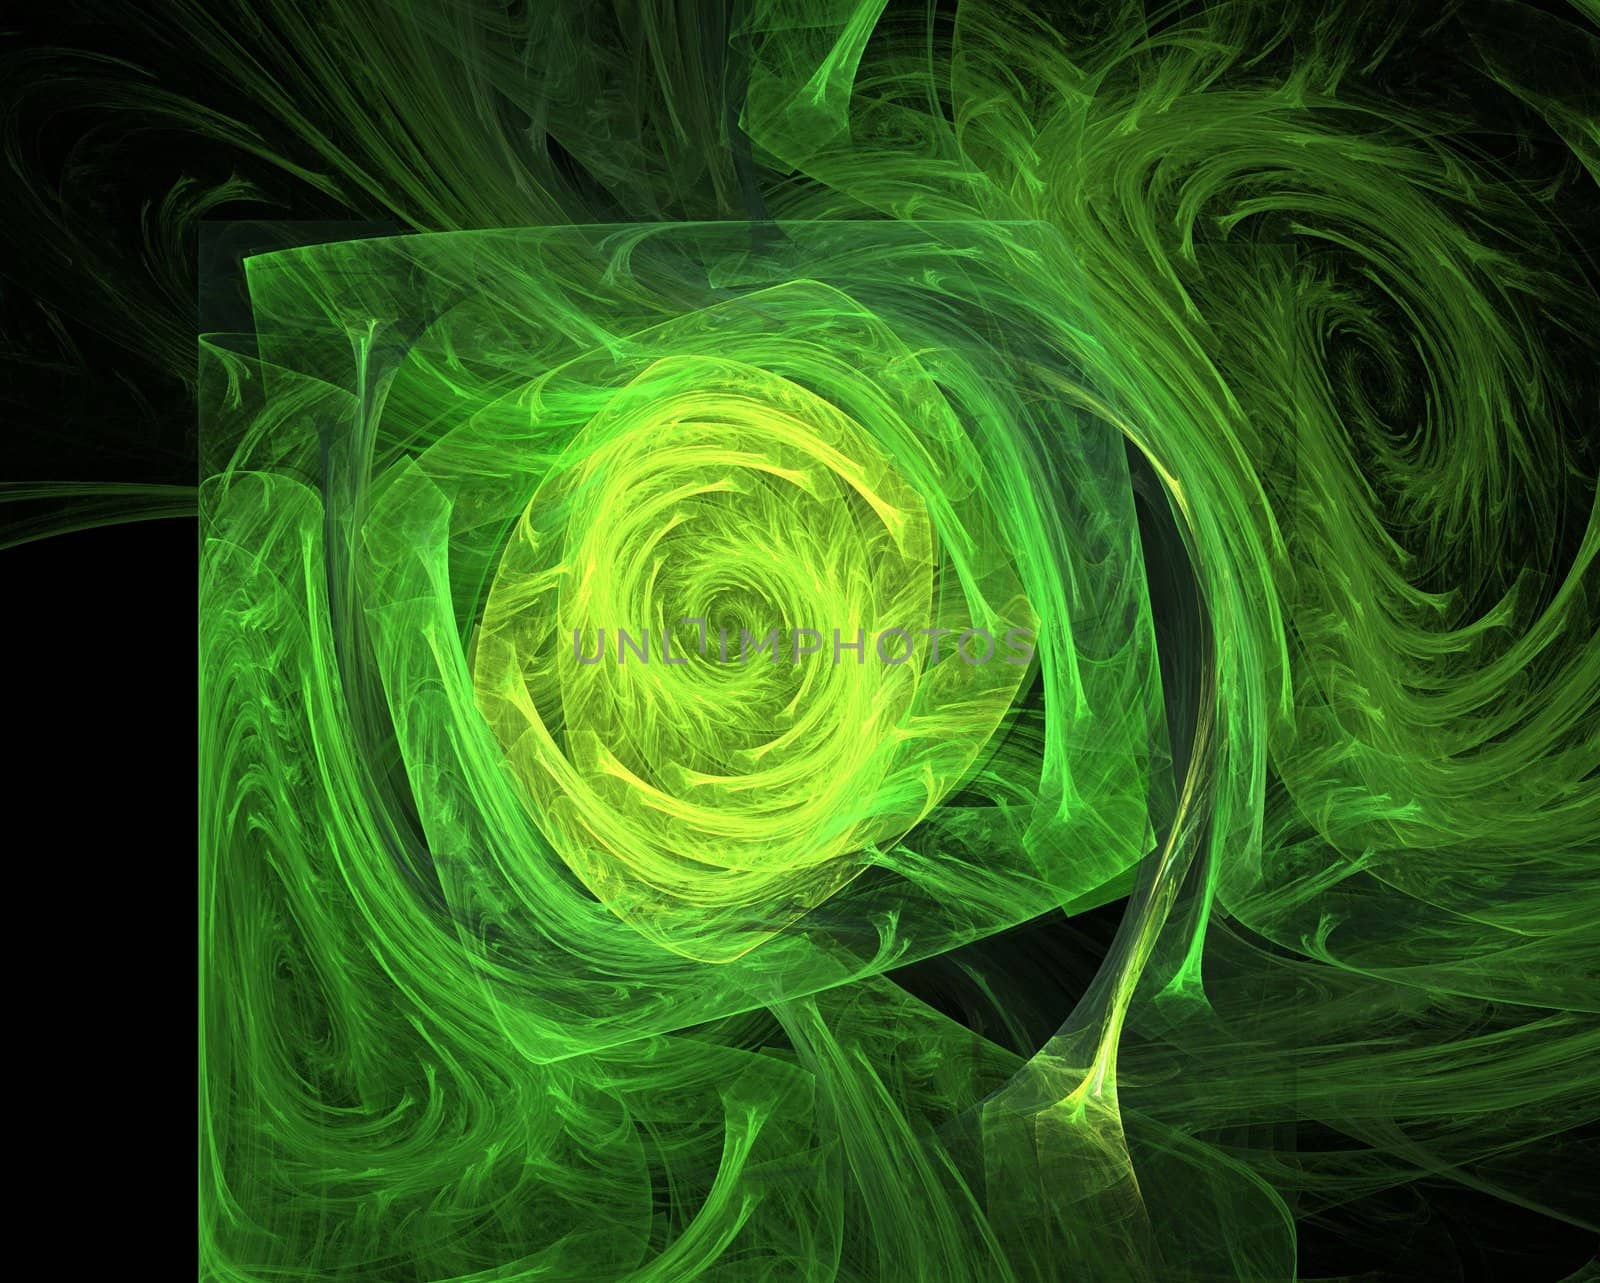 Green vortex by tomatto